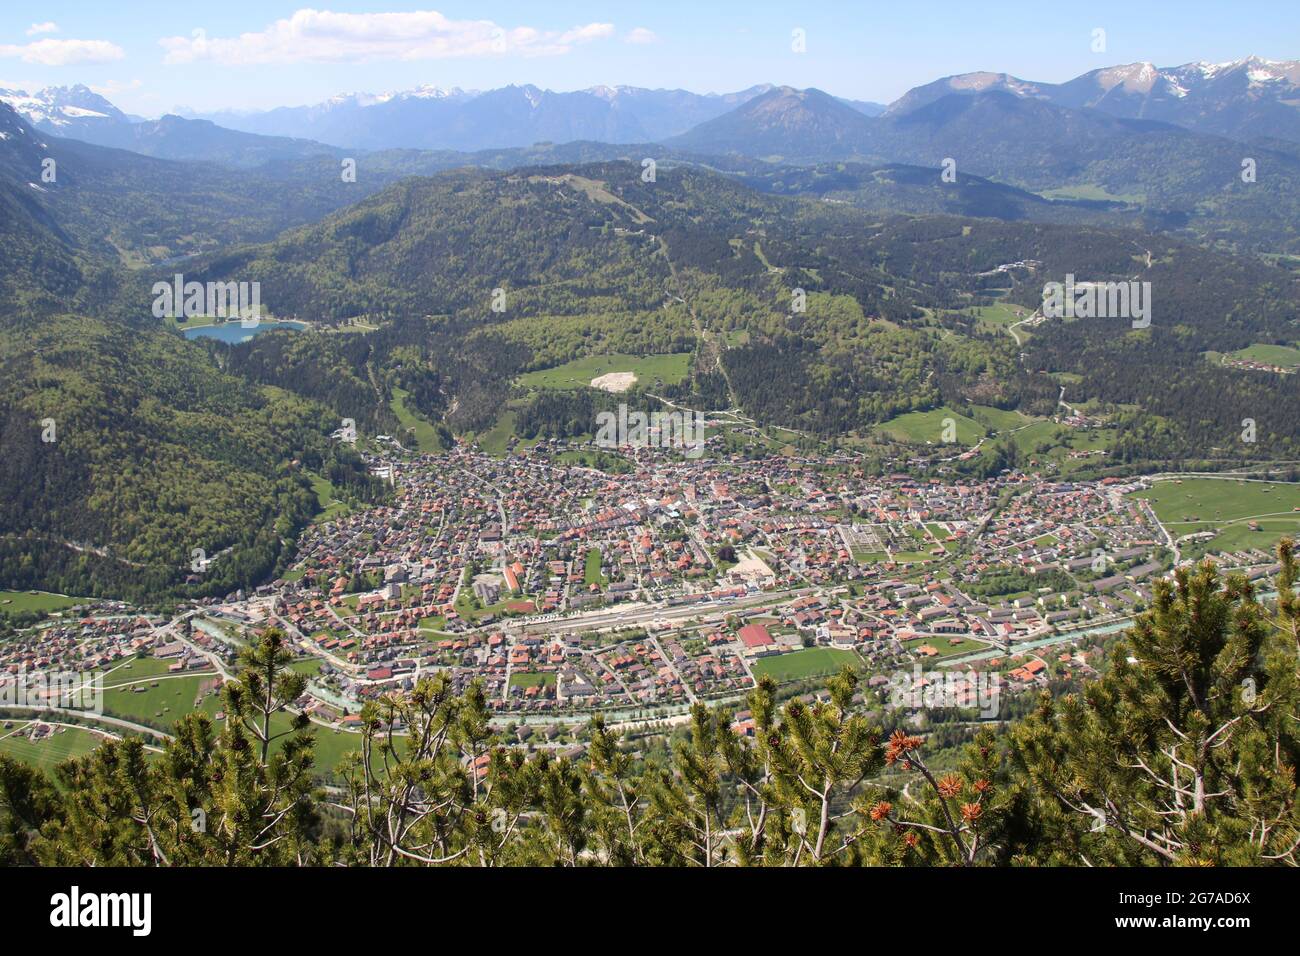 Vue du Gamseck au-dessus de la Mittenwalder Hütte, vue d'ensemble des villes de Mittenwald, Kranzberg, Lautersee, au printemps contre un ciel bleu, atmosphère de woken, atmosphère, l'Estergebirge en arrière-plan Banque D'Images